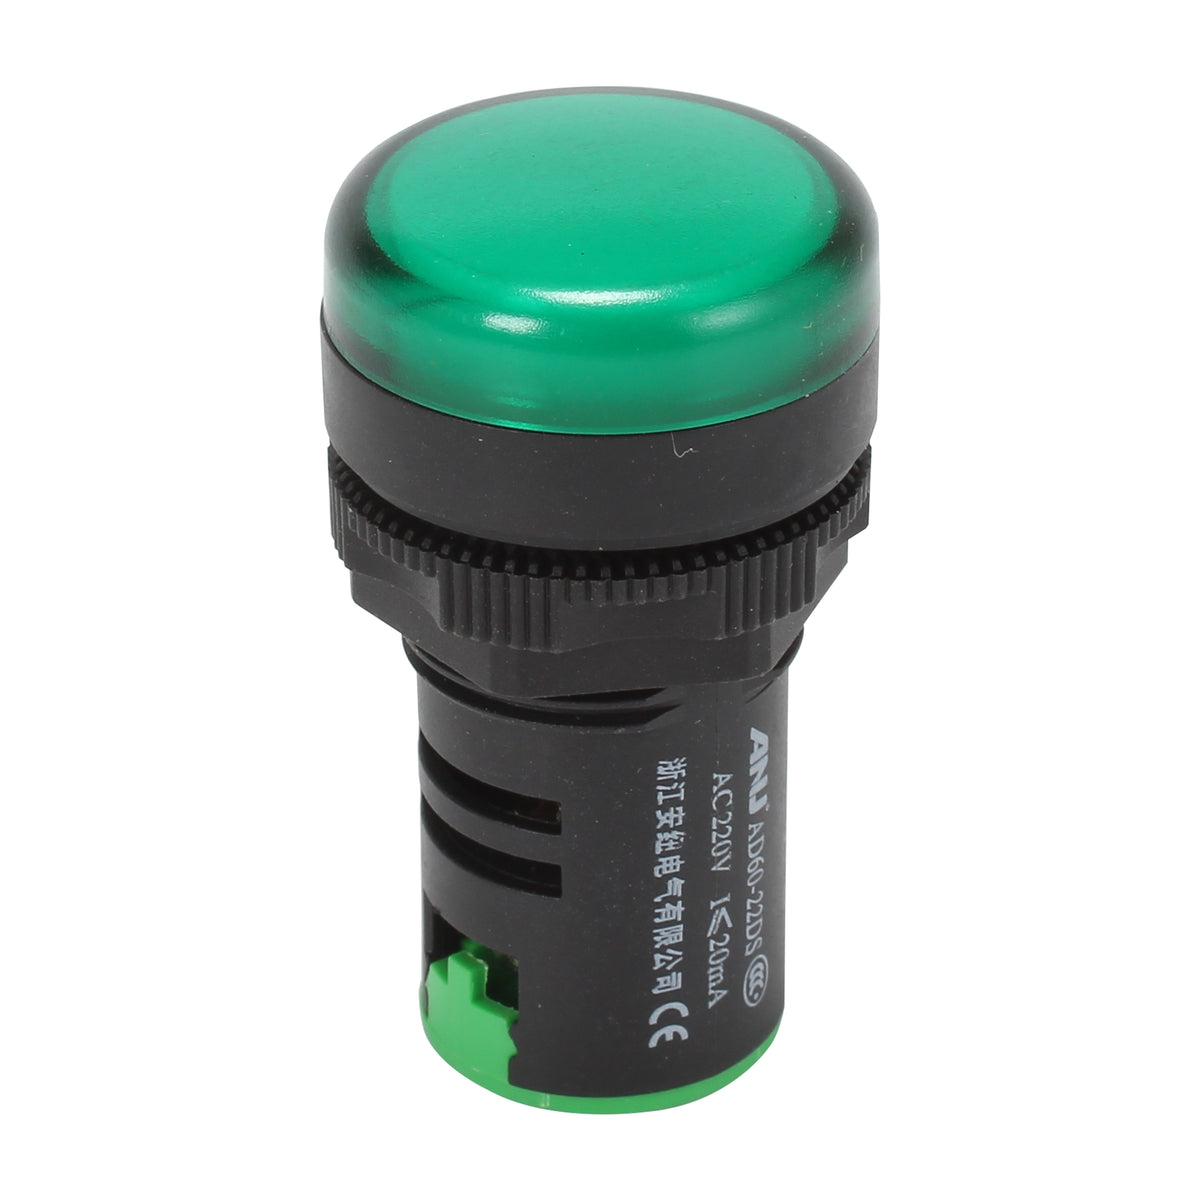 22mm Indicator Light Short Version Black Shell Green